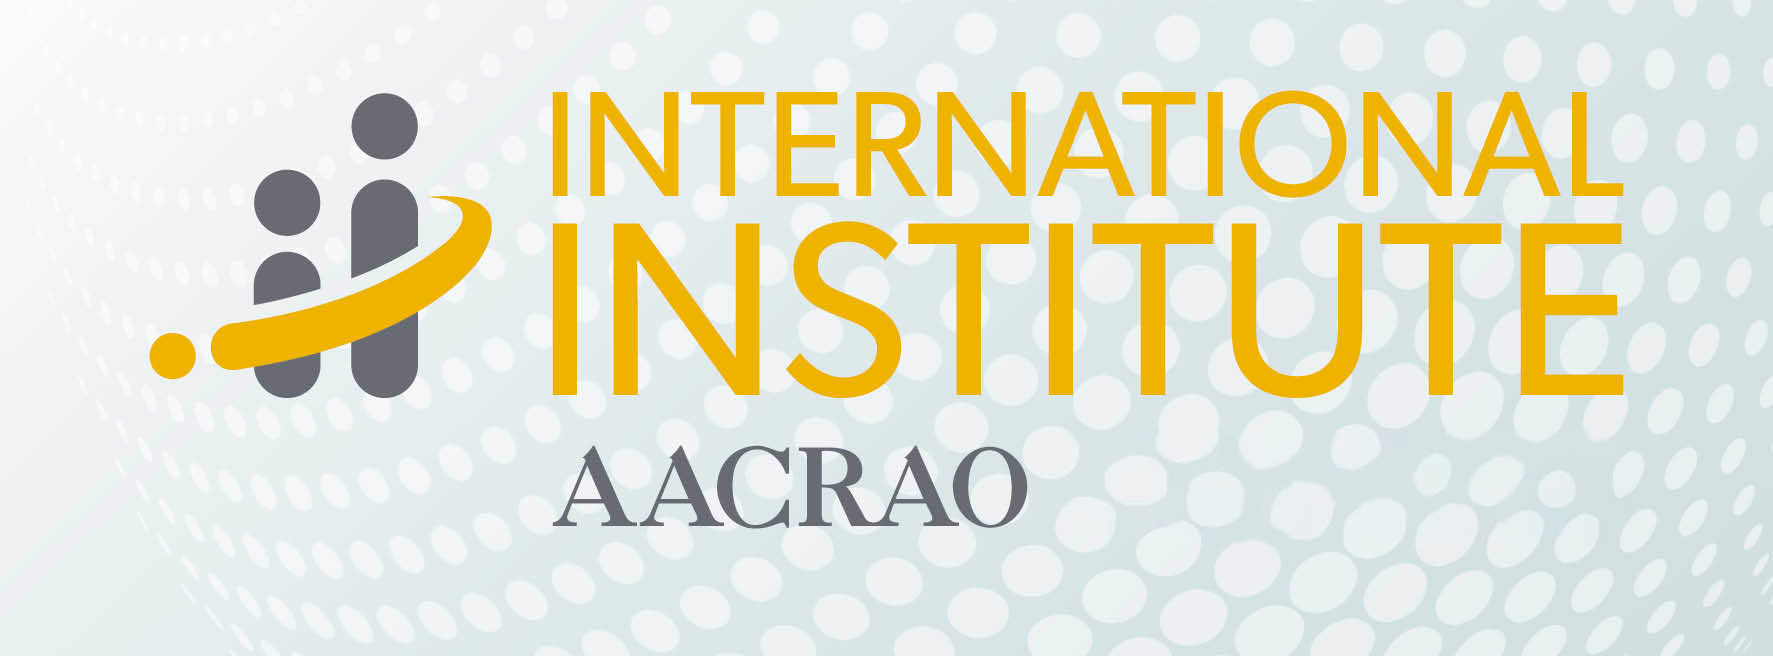 AACRAO International Institute Banner